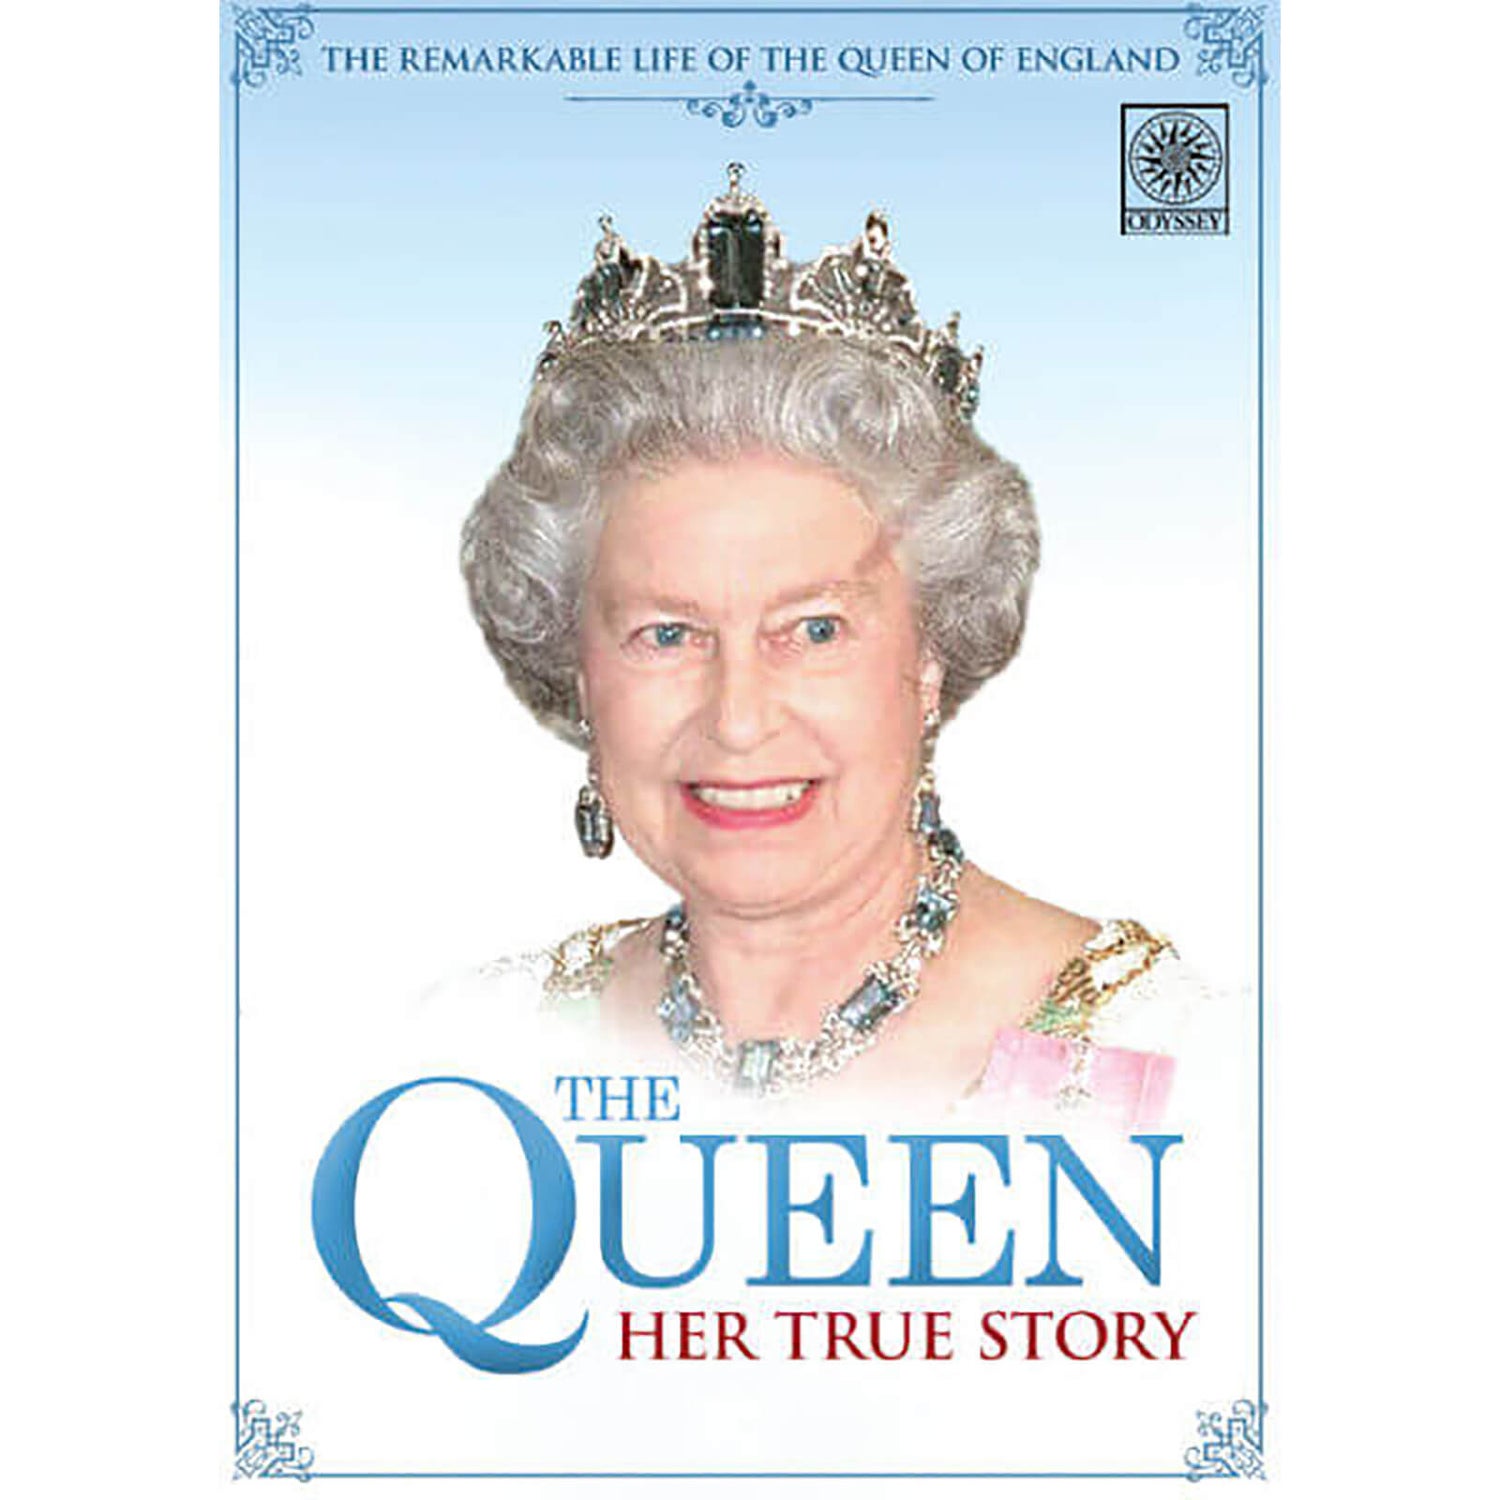 The Queen: Her True Story